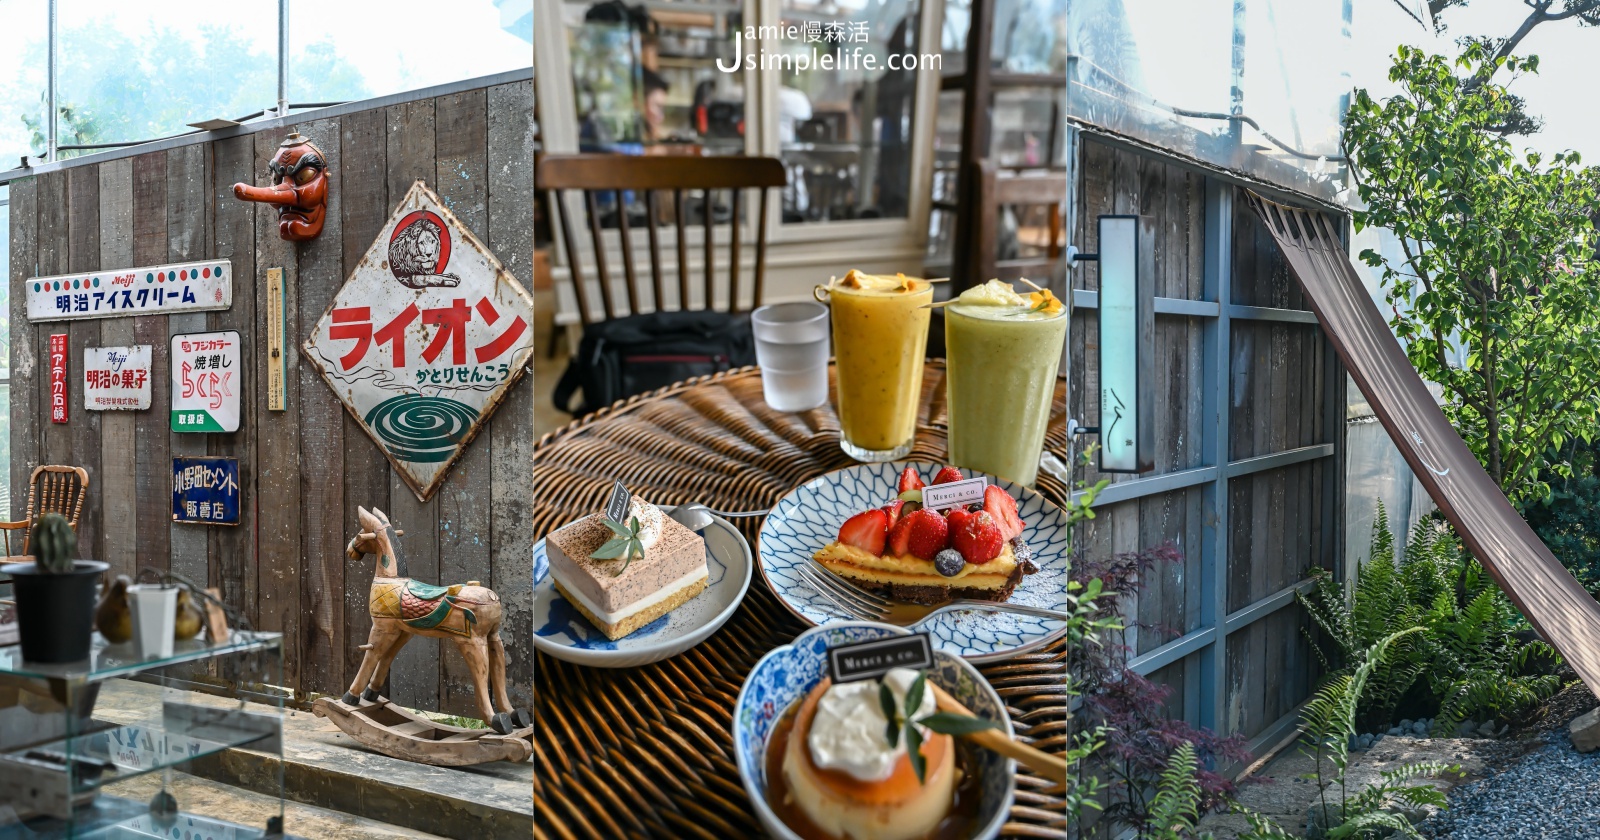 陽明山「Merci 裏山」溫室庭園品味咖啡甜點、3處舒服空間